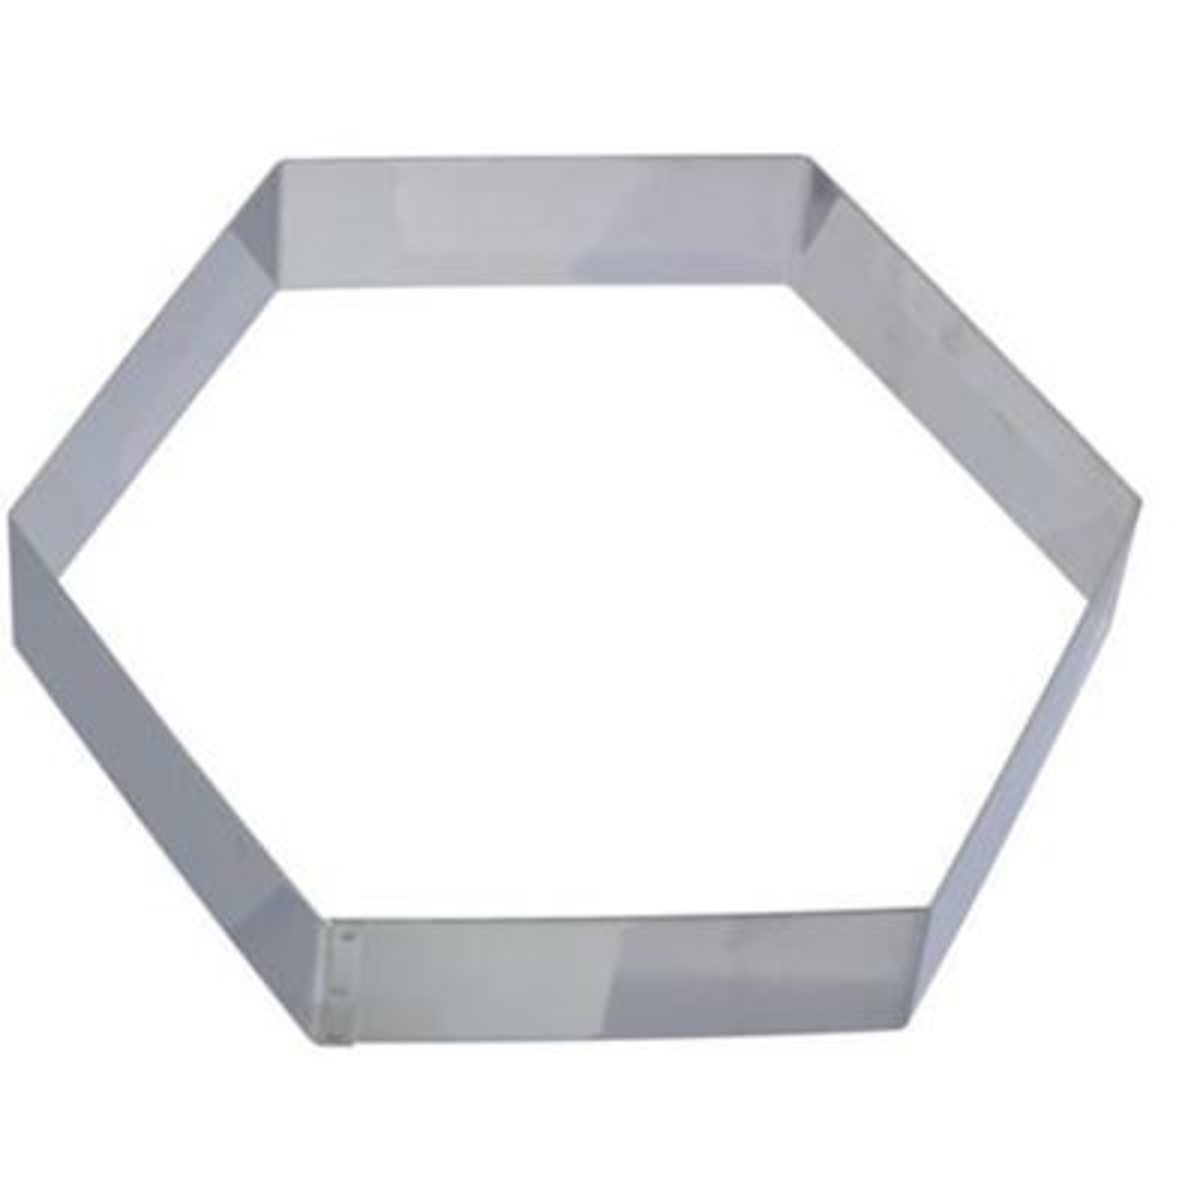 Cercle à  mousse inox hexagonale 22 cm H 4.5 cm Gobel